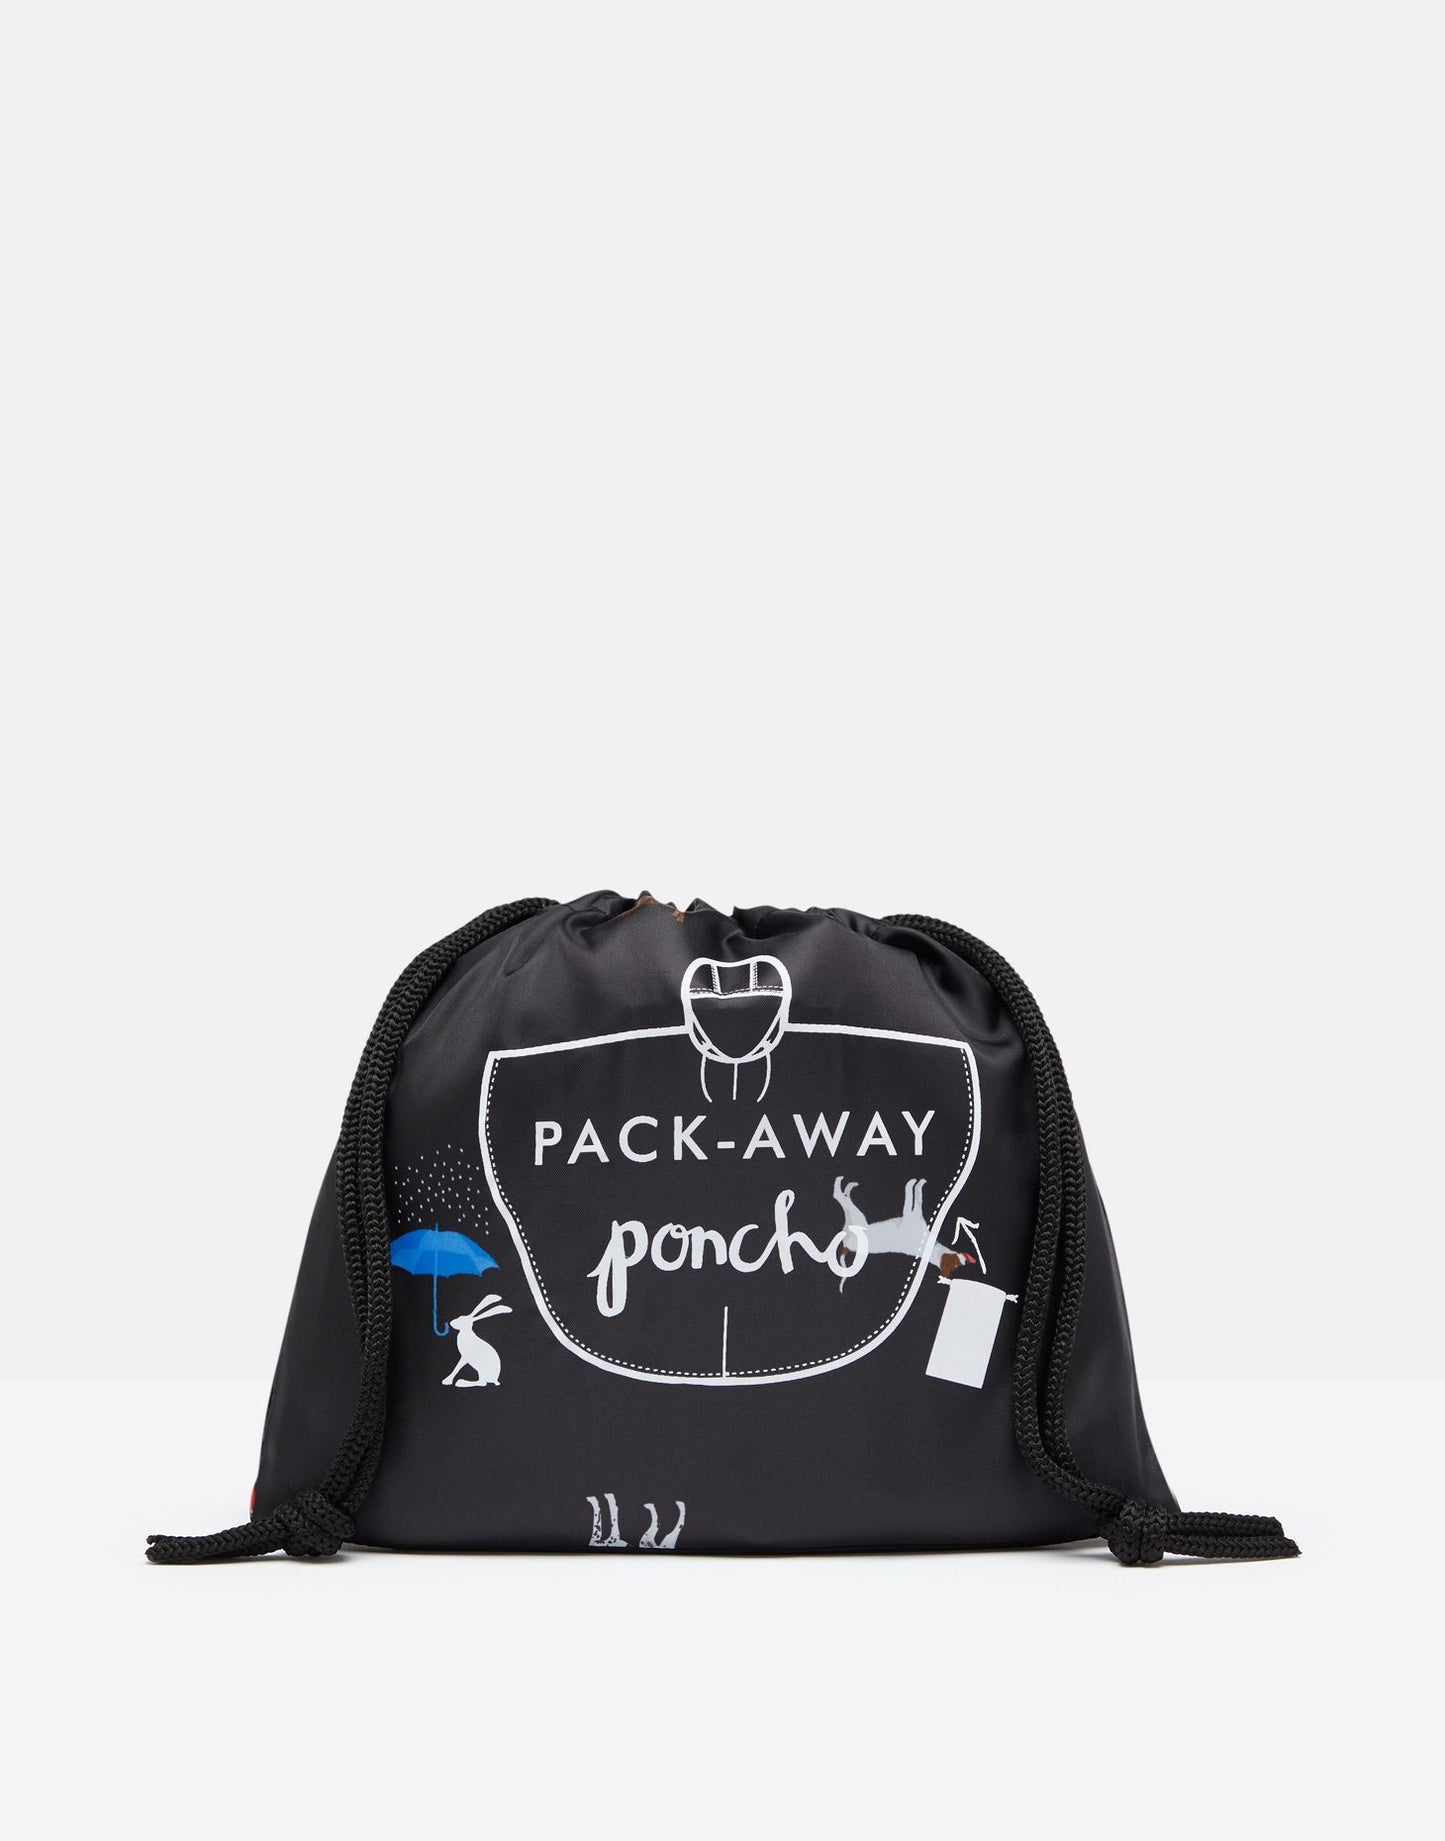 Joules Packaway Poncho